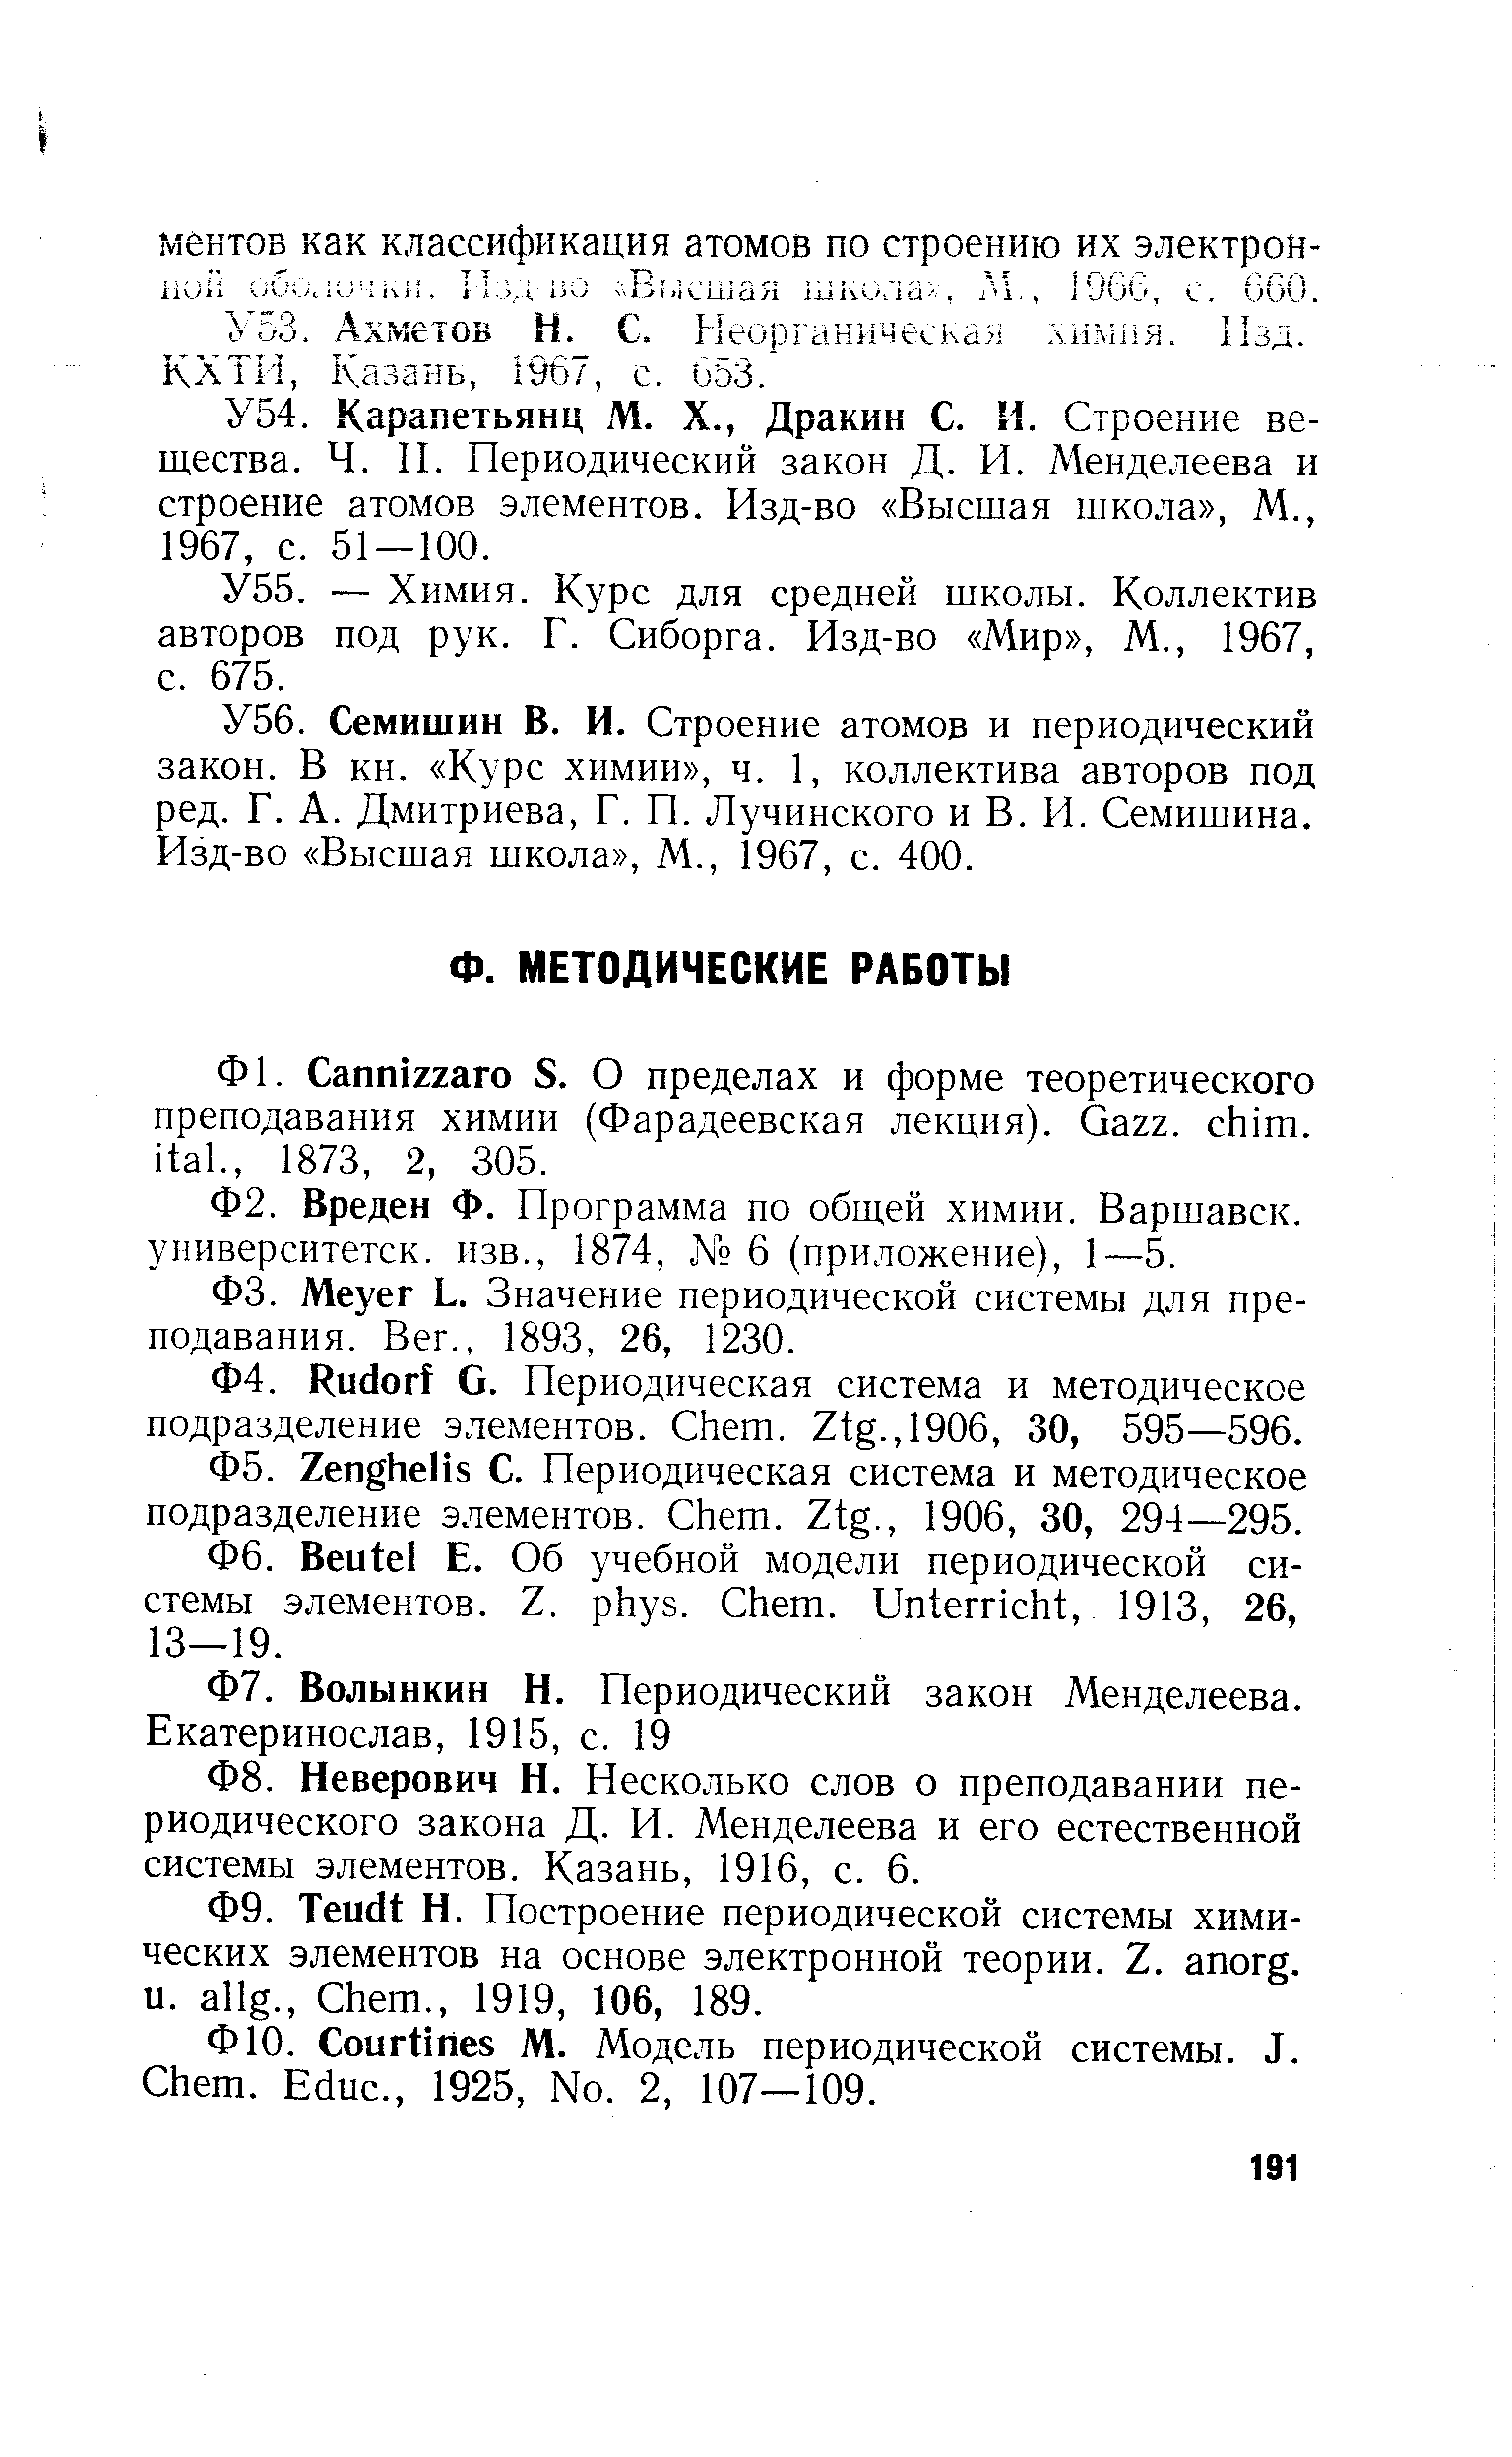 Меуег L. Значение периодической системы для преподавания. Вег., 1893, 26, 1230.